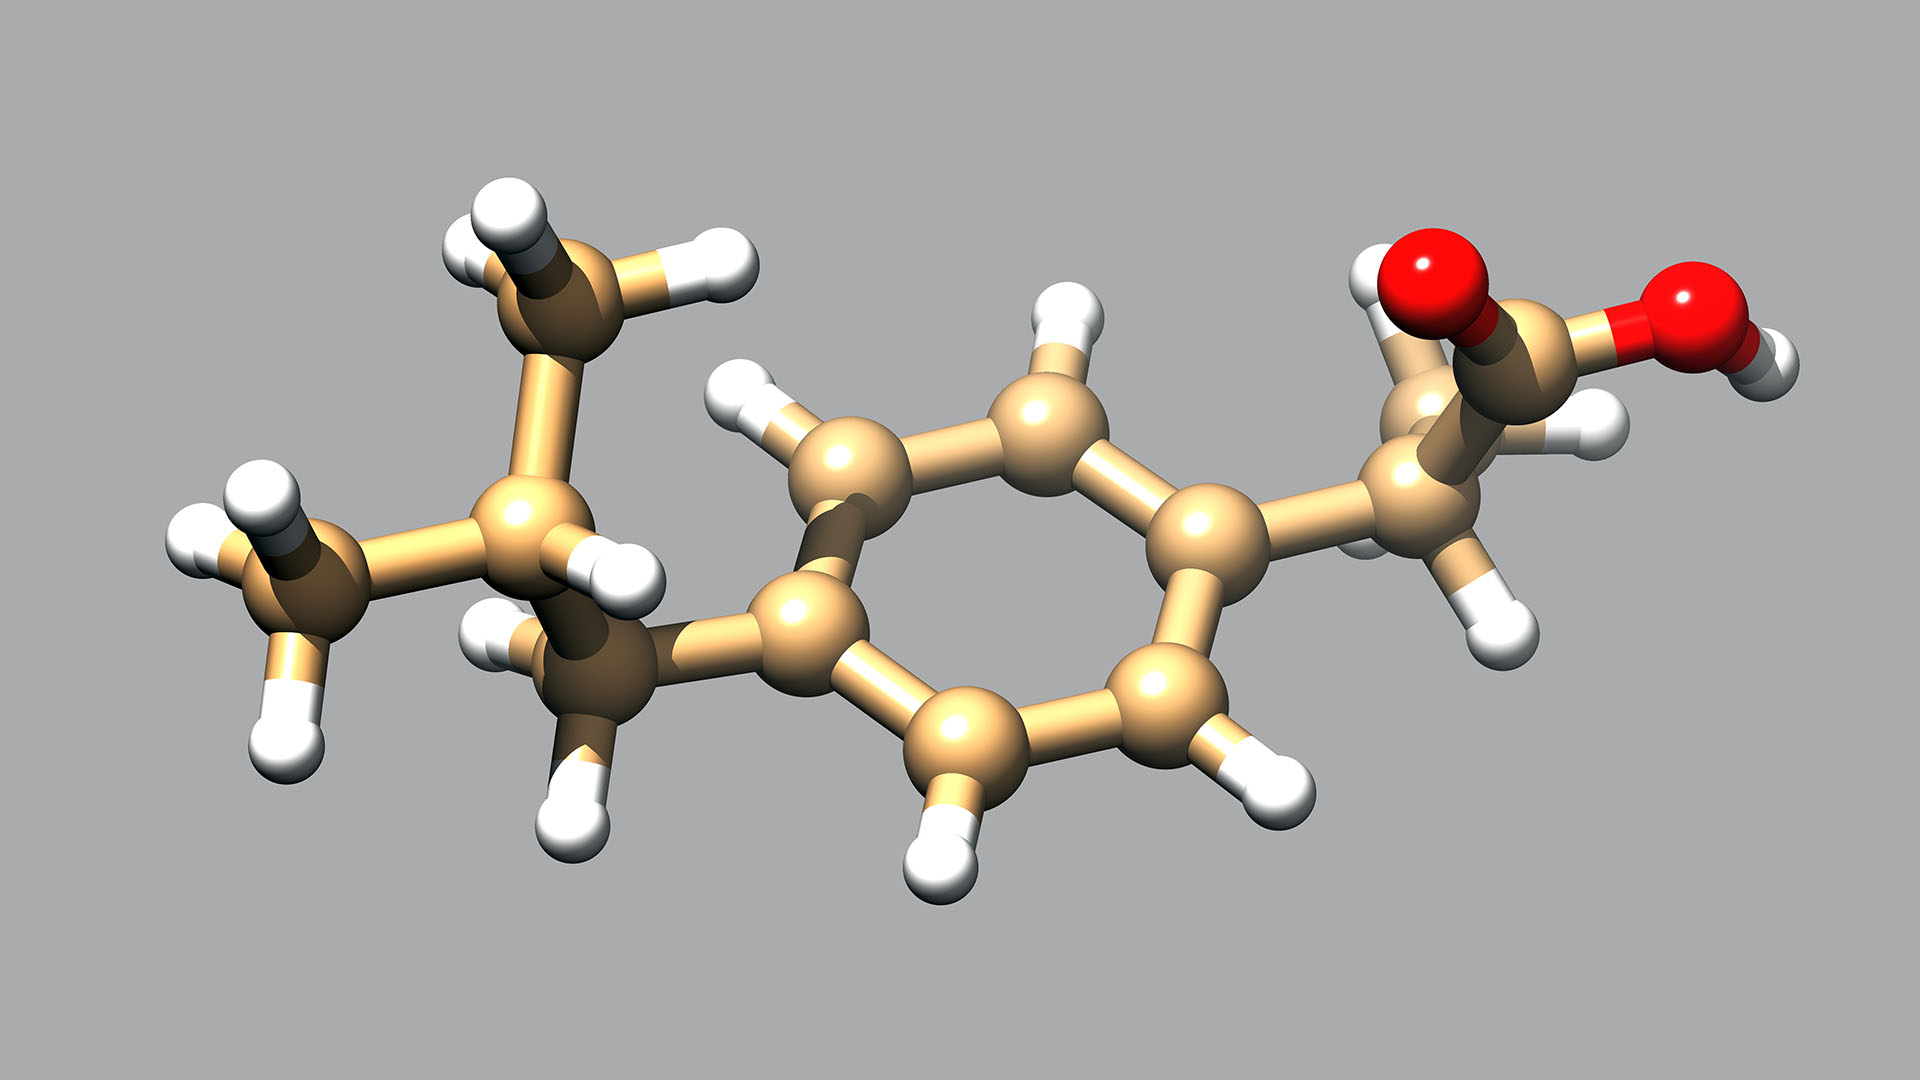 El doctor en Bioquímica Dante Beltramo modificó la molécula del ibuprofeno haciéndola 100% soluble en agua para administrarlo en nebulizaciones (Shutterstock)